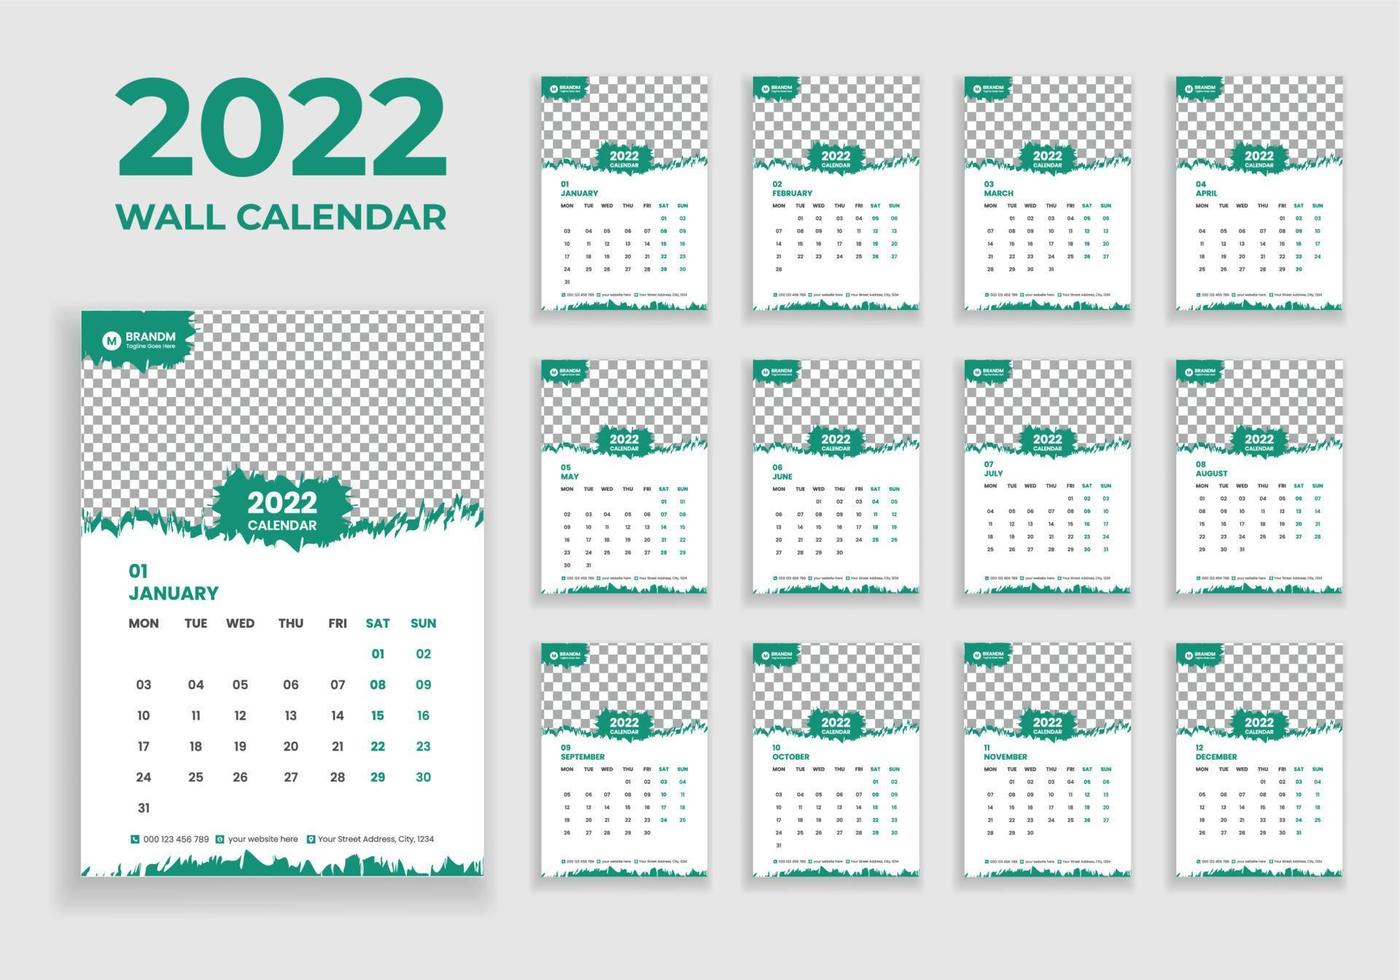 väggkalenderdesign 2022. väggkalenderdesign 2022. nyårskalenderdesign 2022. veckan börjar på måndag. mall för årskalender 2022 vektor